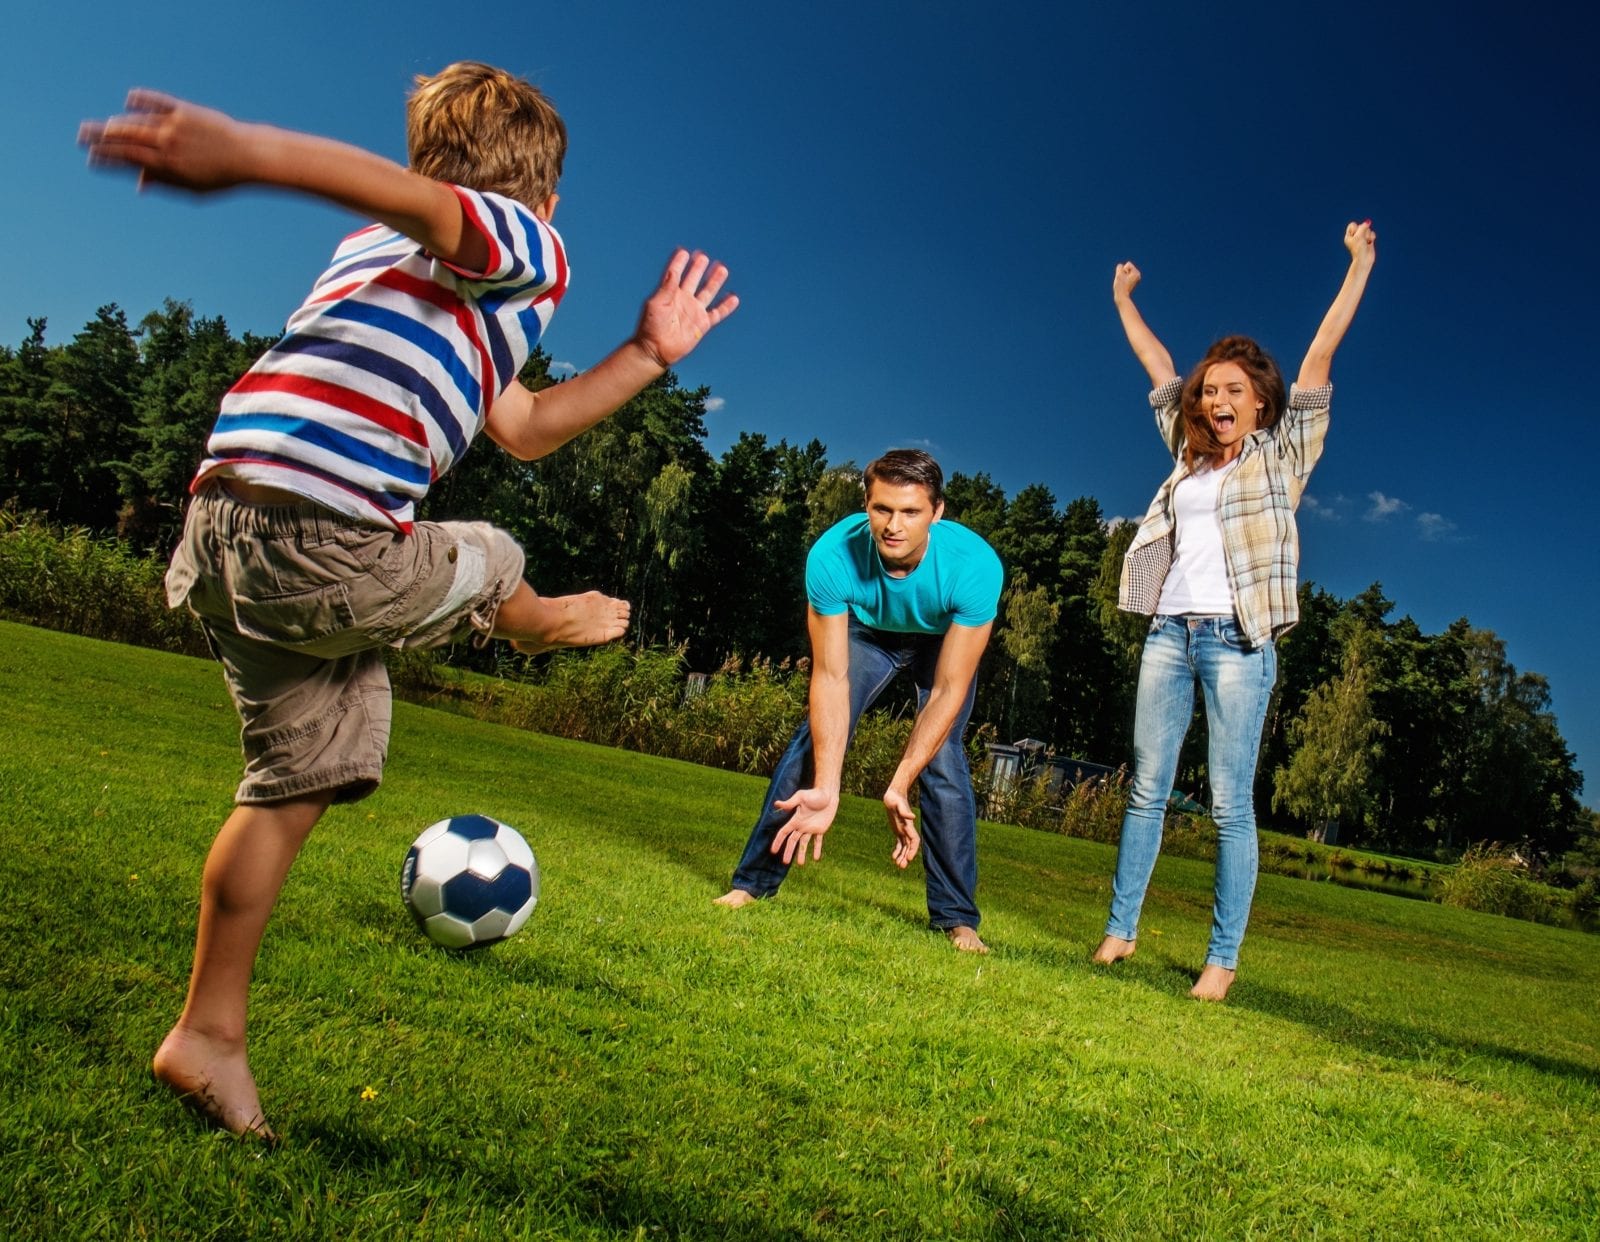 fun gross moter soccer skills for kids